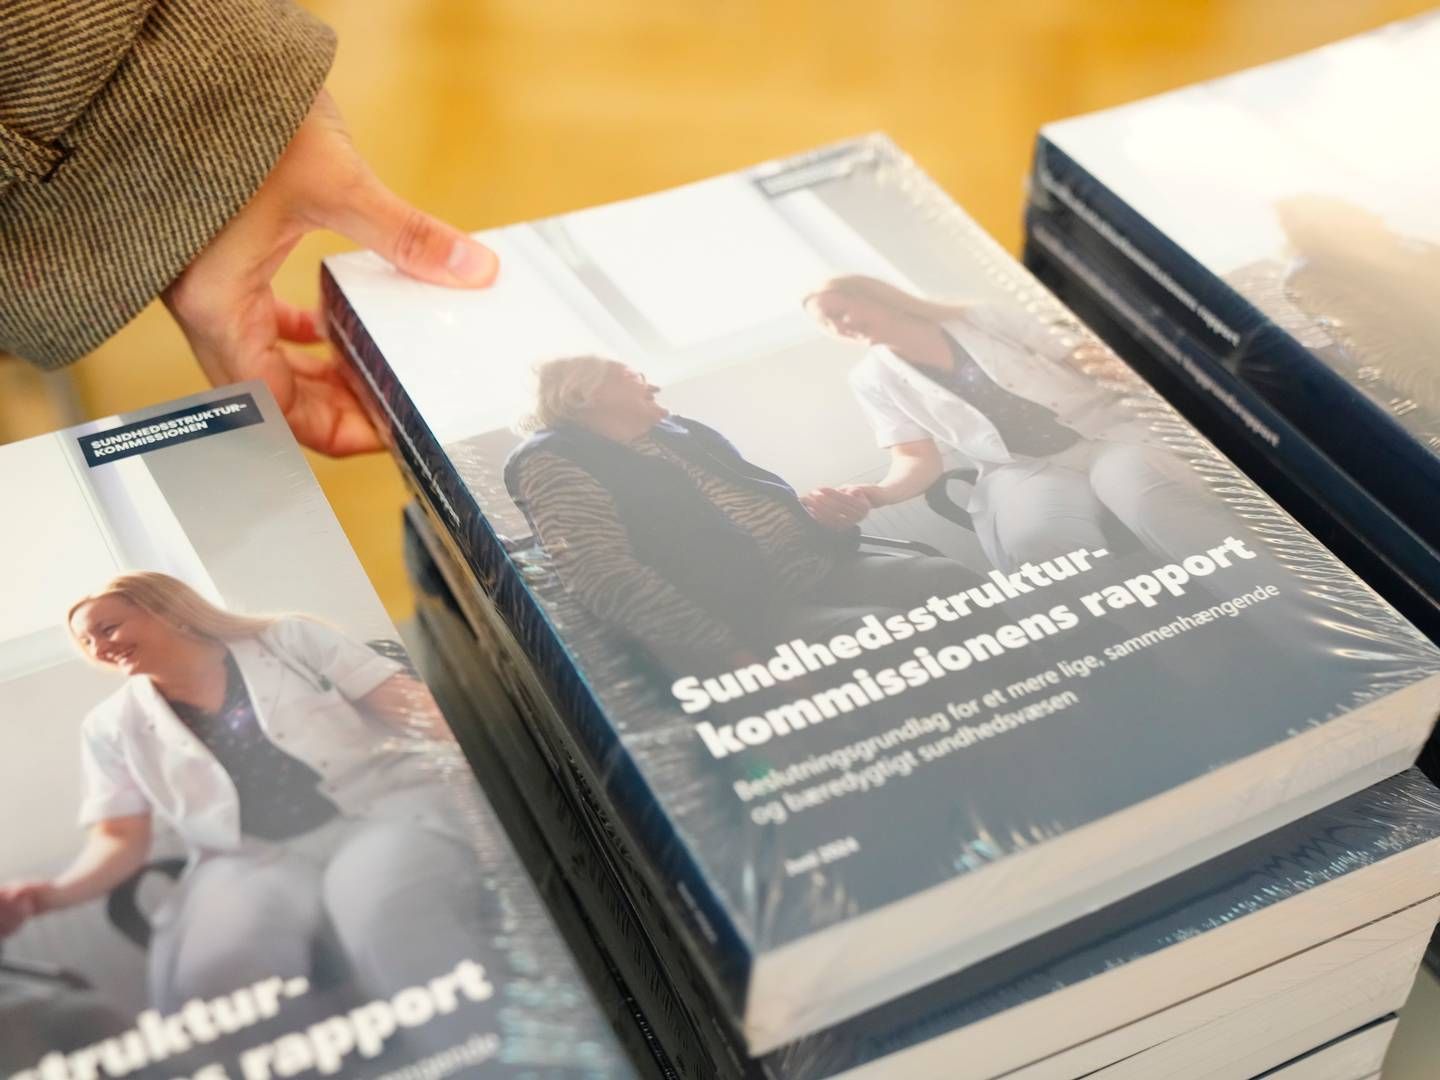 Sundhedsstrukturkommissionen har tirsdag præsenteret sin rapport, som er på godt 400 sider. | Foto: Ida Marie Odgaard/Ritzau Scanpix